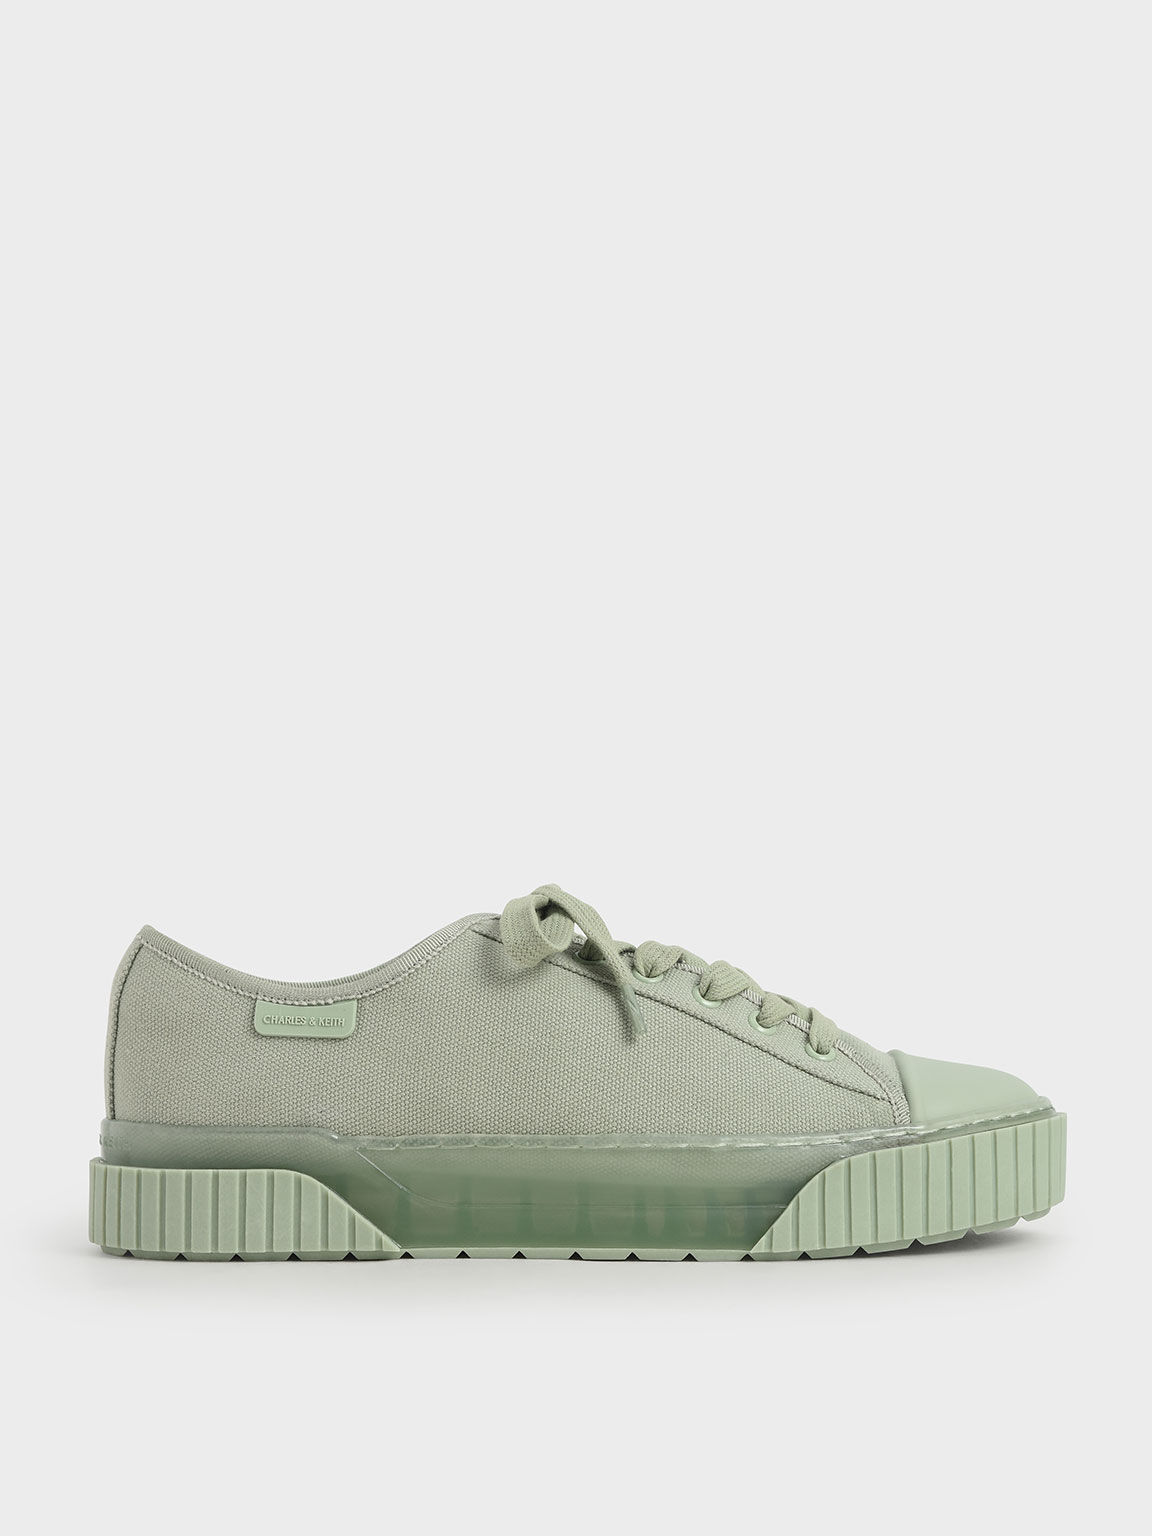 mint green sneakers